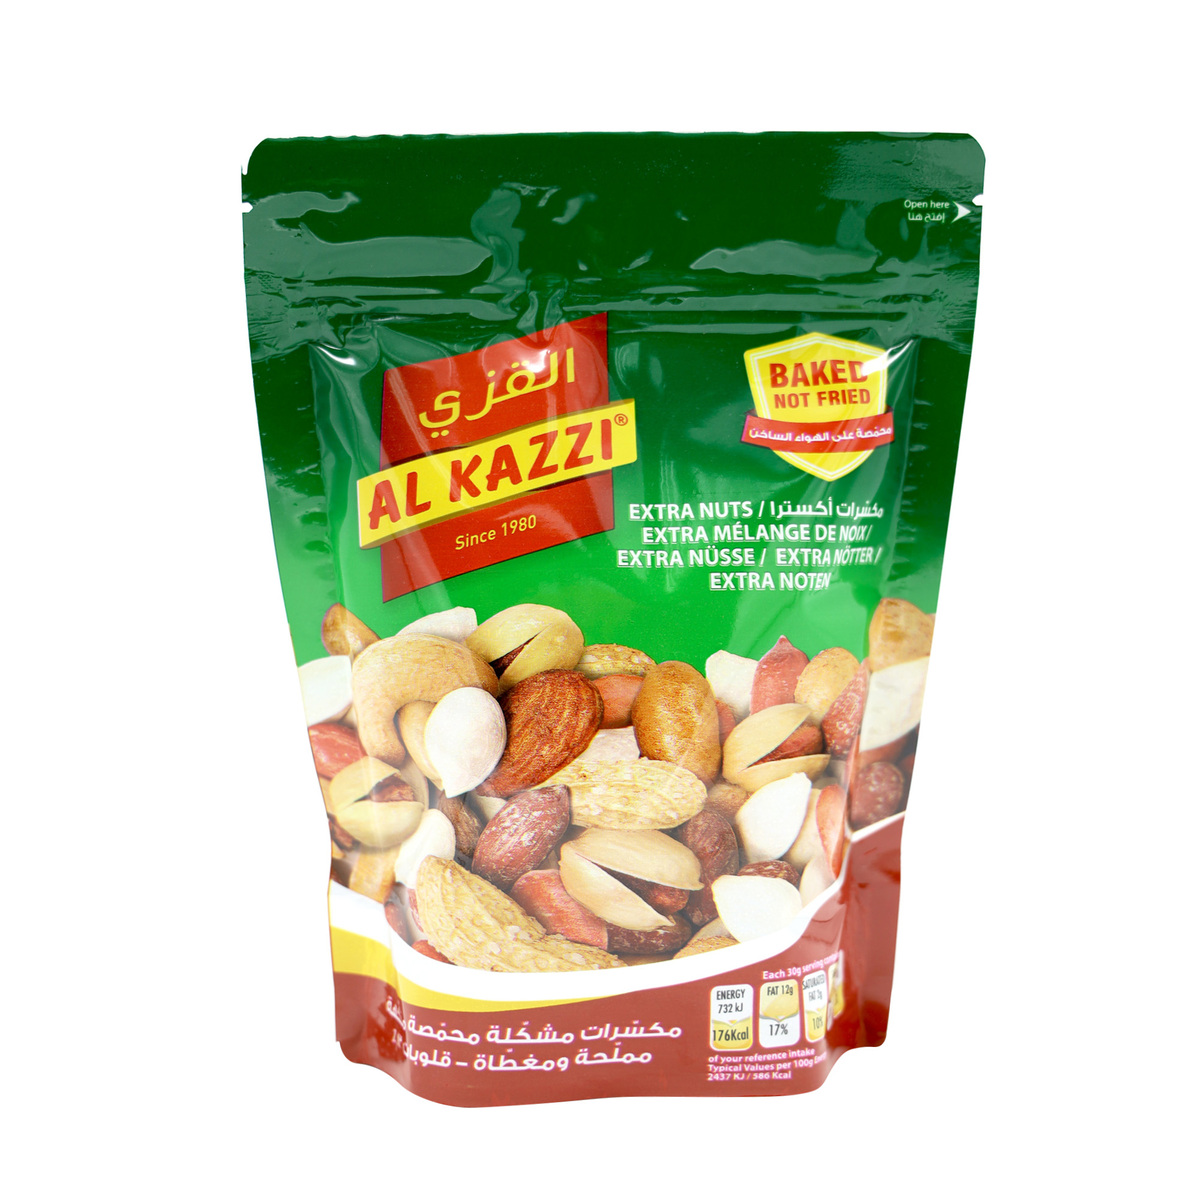 Al Kazzi Extra Nuts 300g